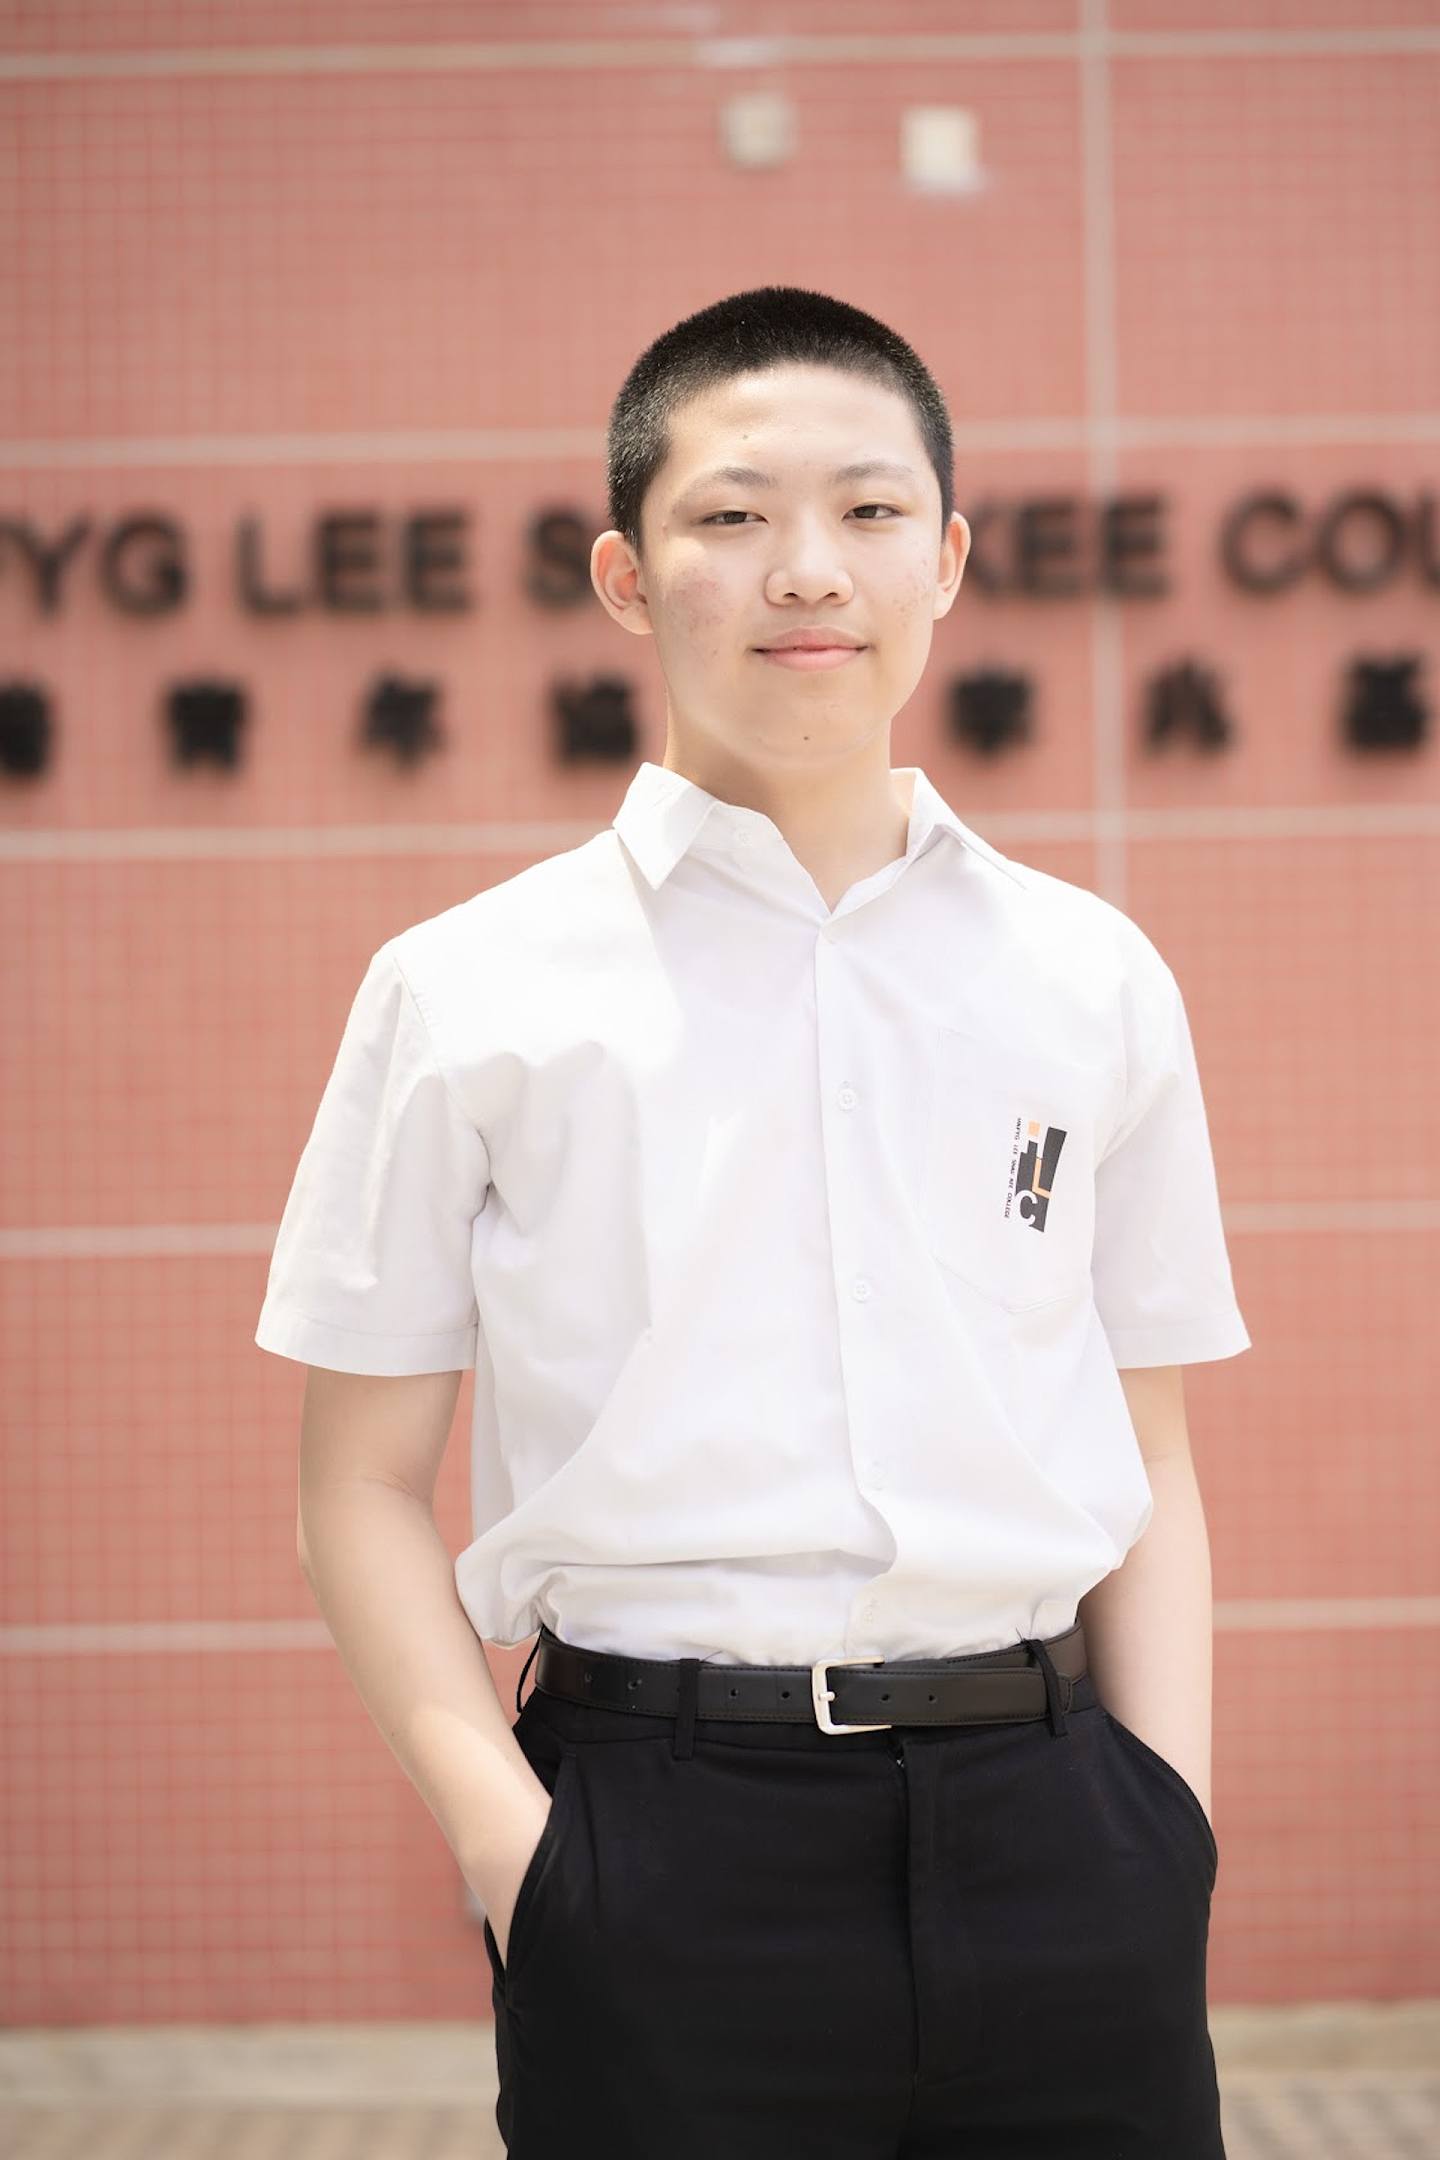 香港青年协会李兆基书院中三学生刘鸿志，将以13岁之龄在新学年入读港大工学学士(工程科学)课程。 （受访者提供）